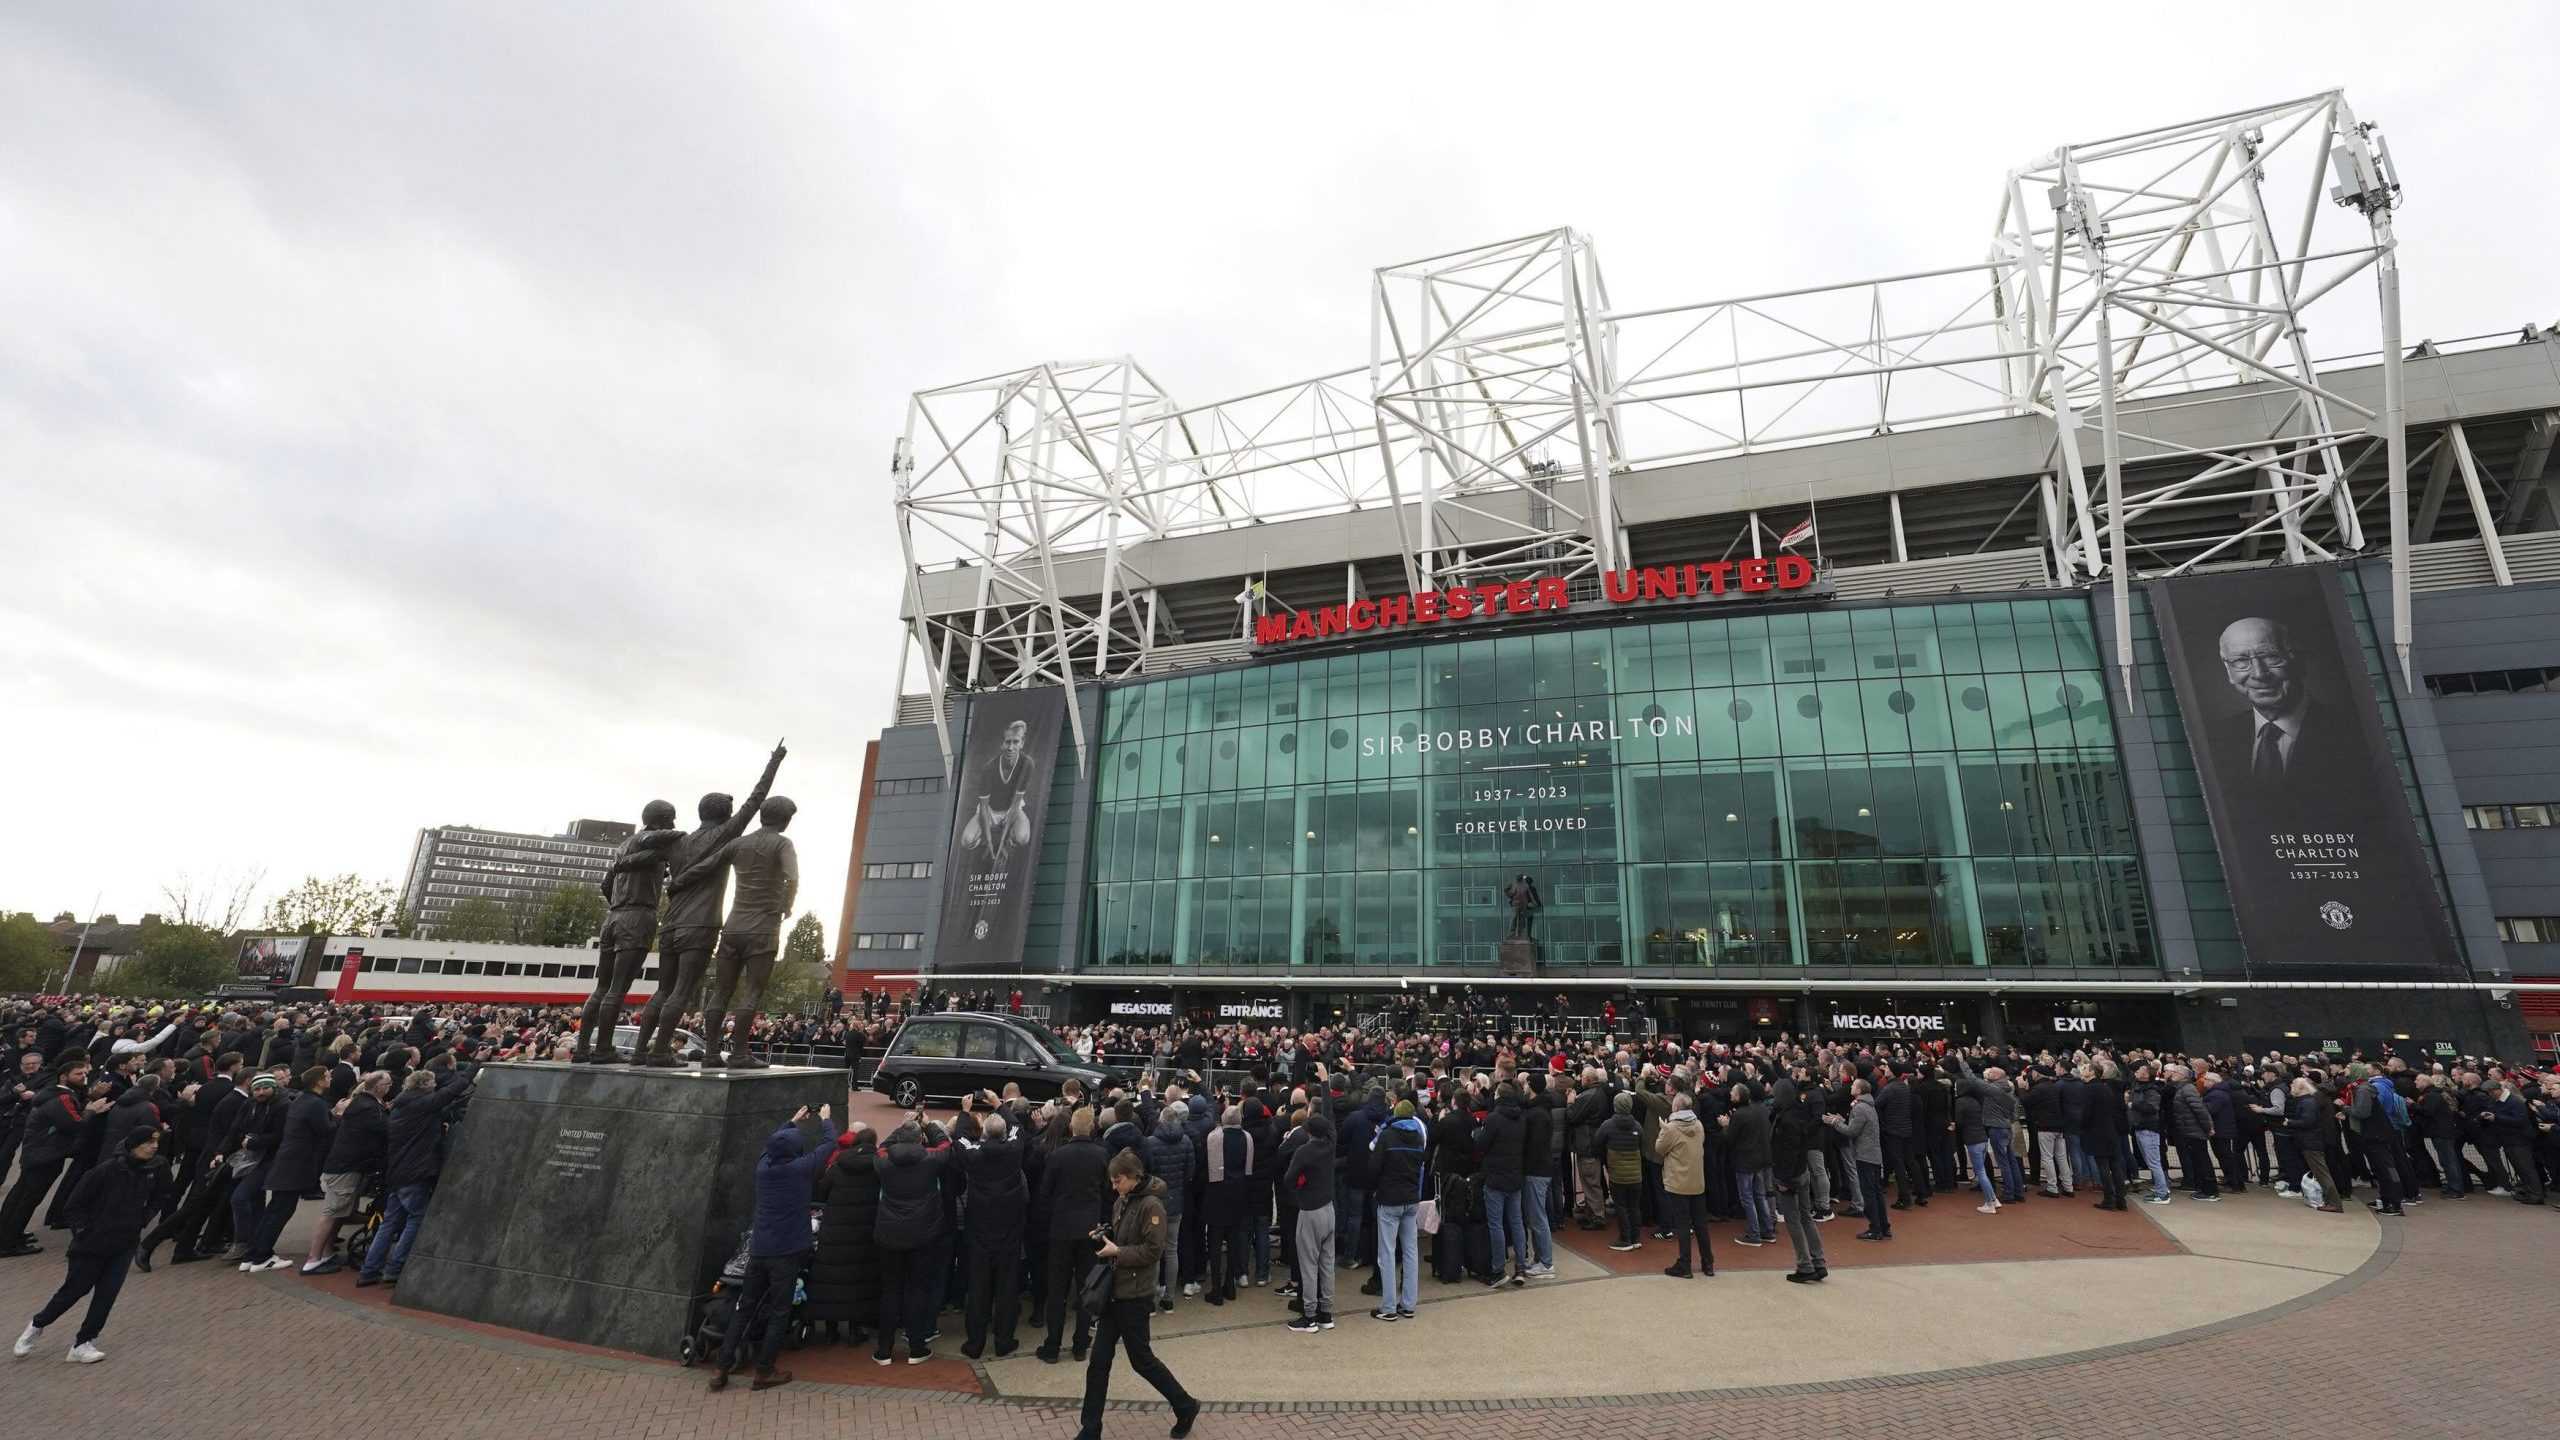 PohrebnÃƒÂ½ sprievod futbalovej legendy Manchestru United Bobyho Charltona pred Ã…Â¡tadiÃƒÂ³nom Old Trafford v Manchestri.